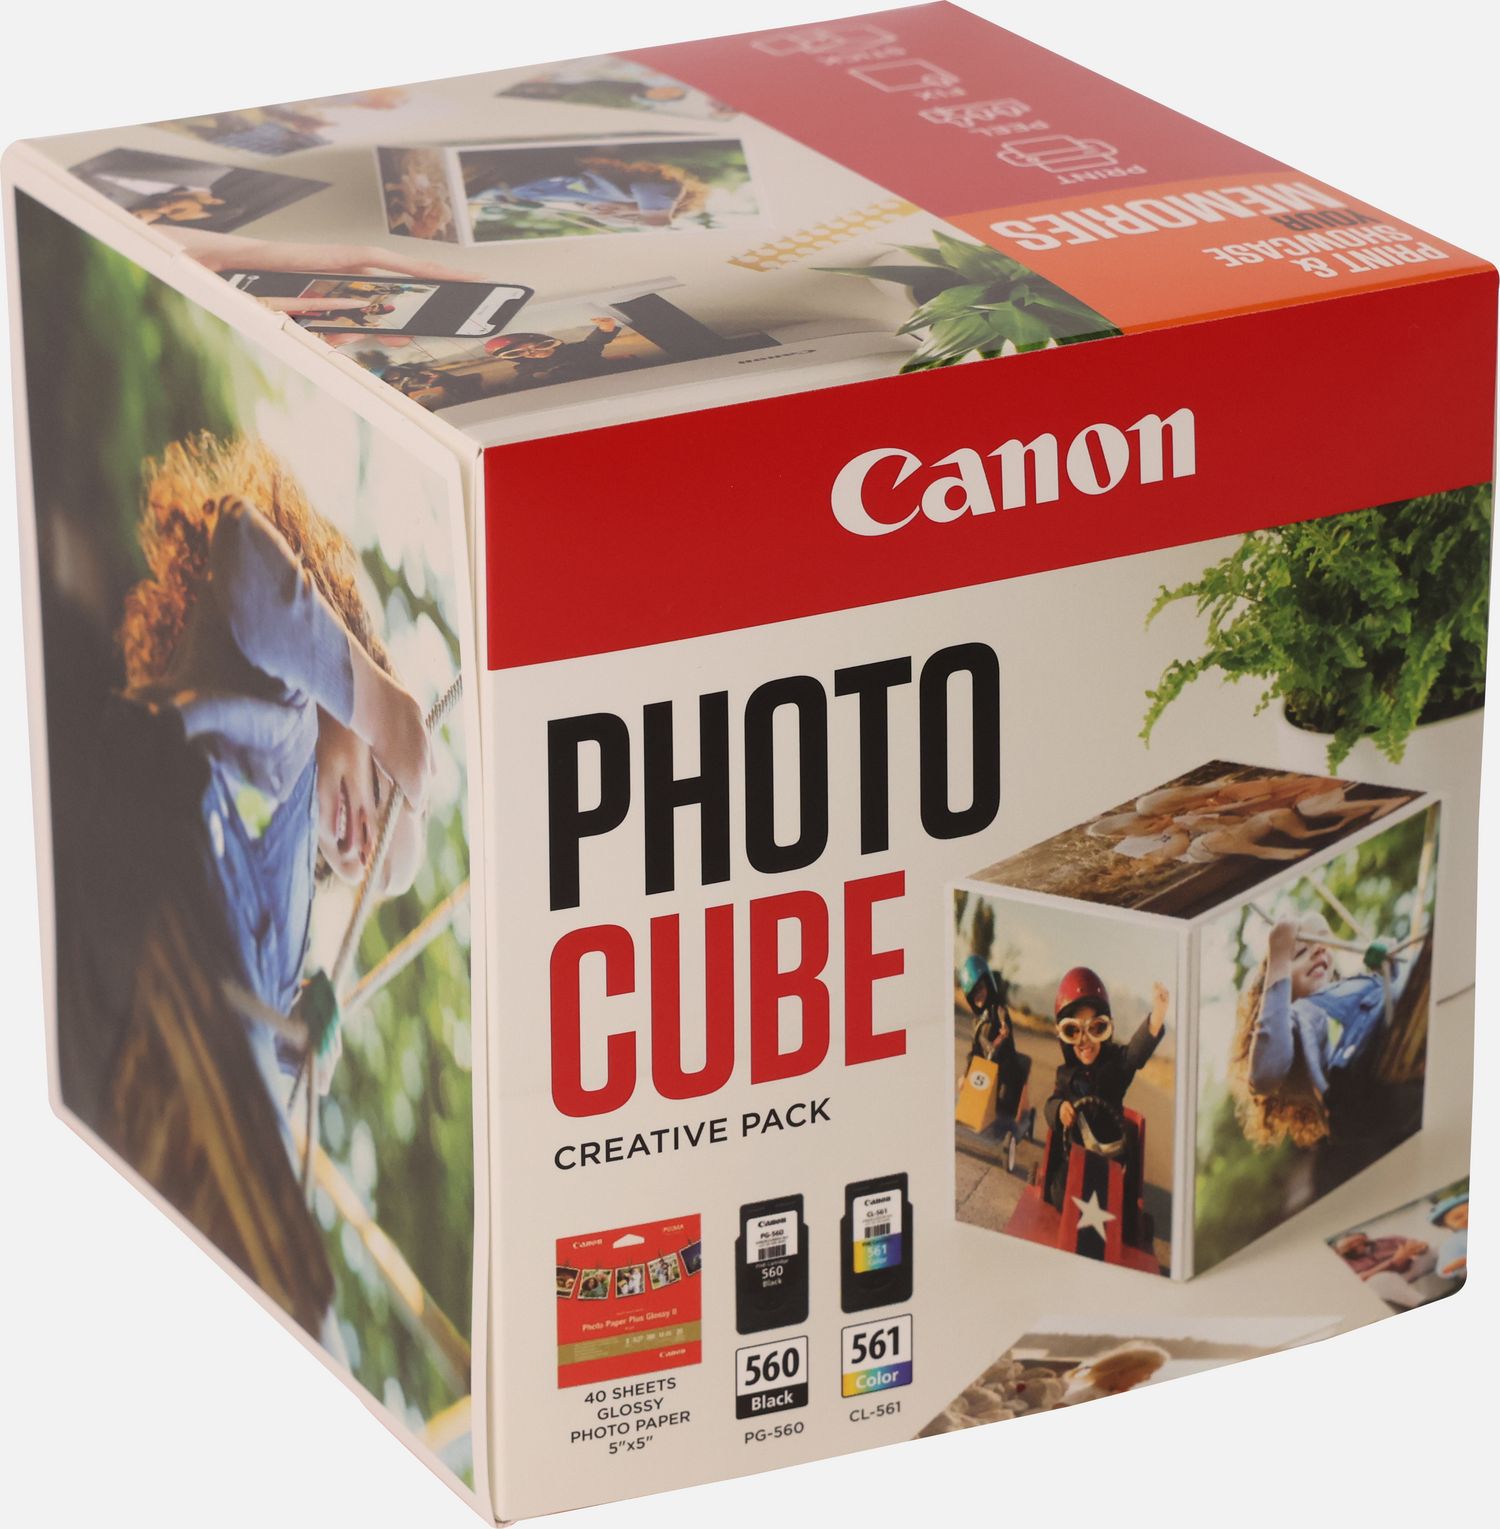 Pack à prix réduit Canon de cartouches d'encre noire PG-560XL et couleur  CL-561XL + Papier Photo — Boutique Canon France